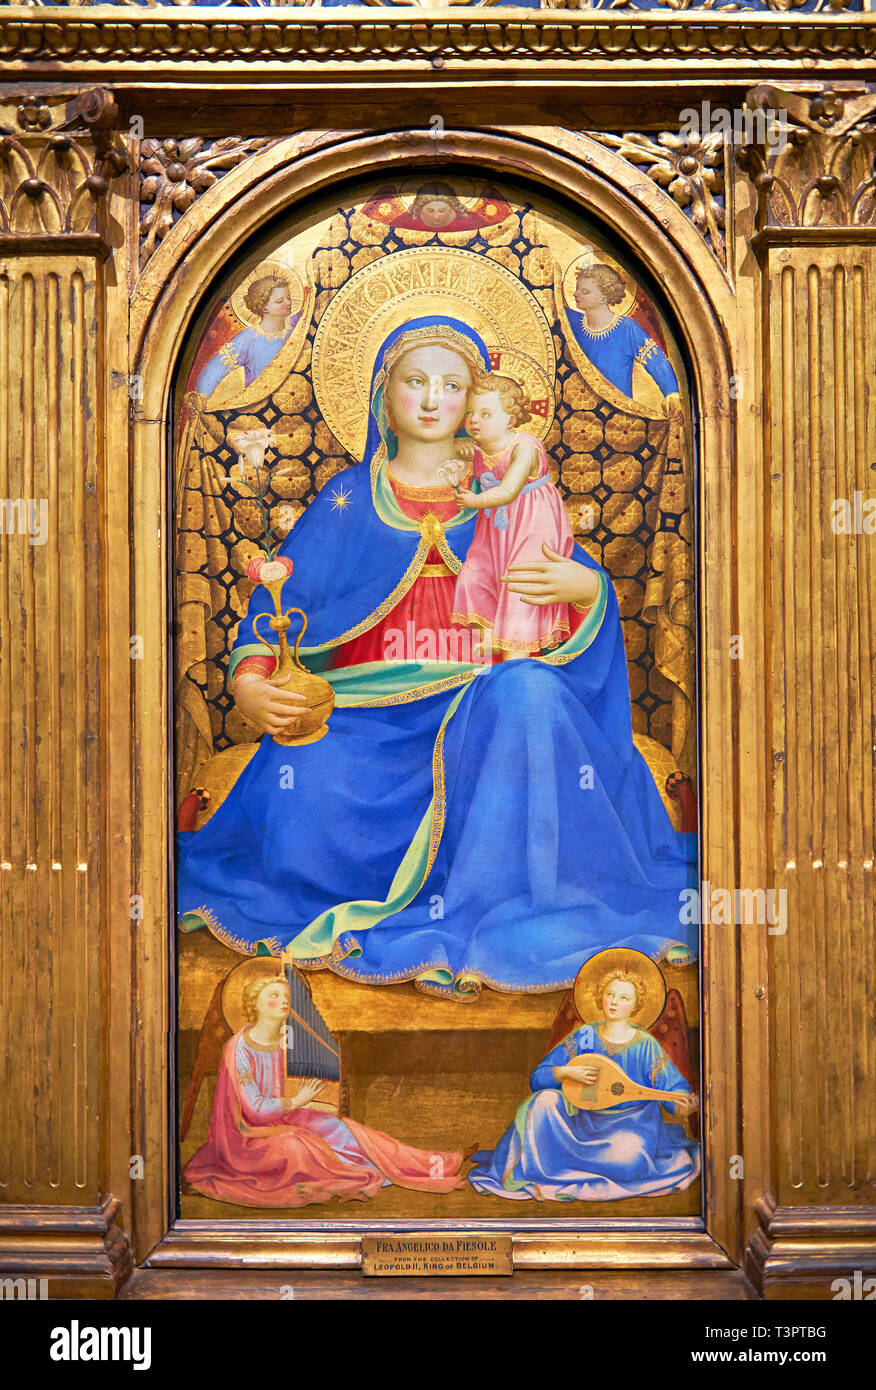 Gótica de la Virgen María) (Virgen de la Humildad. Polychrome y hoja de oro sobre madera, circa 1433-1435. La Virgen está sentado sobre un cojín en el flo Foto de stock